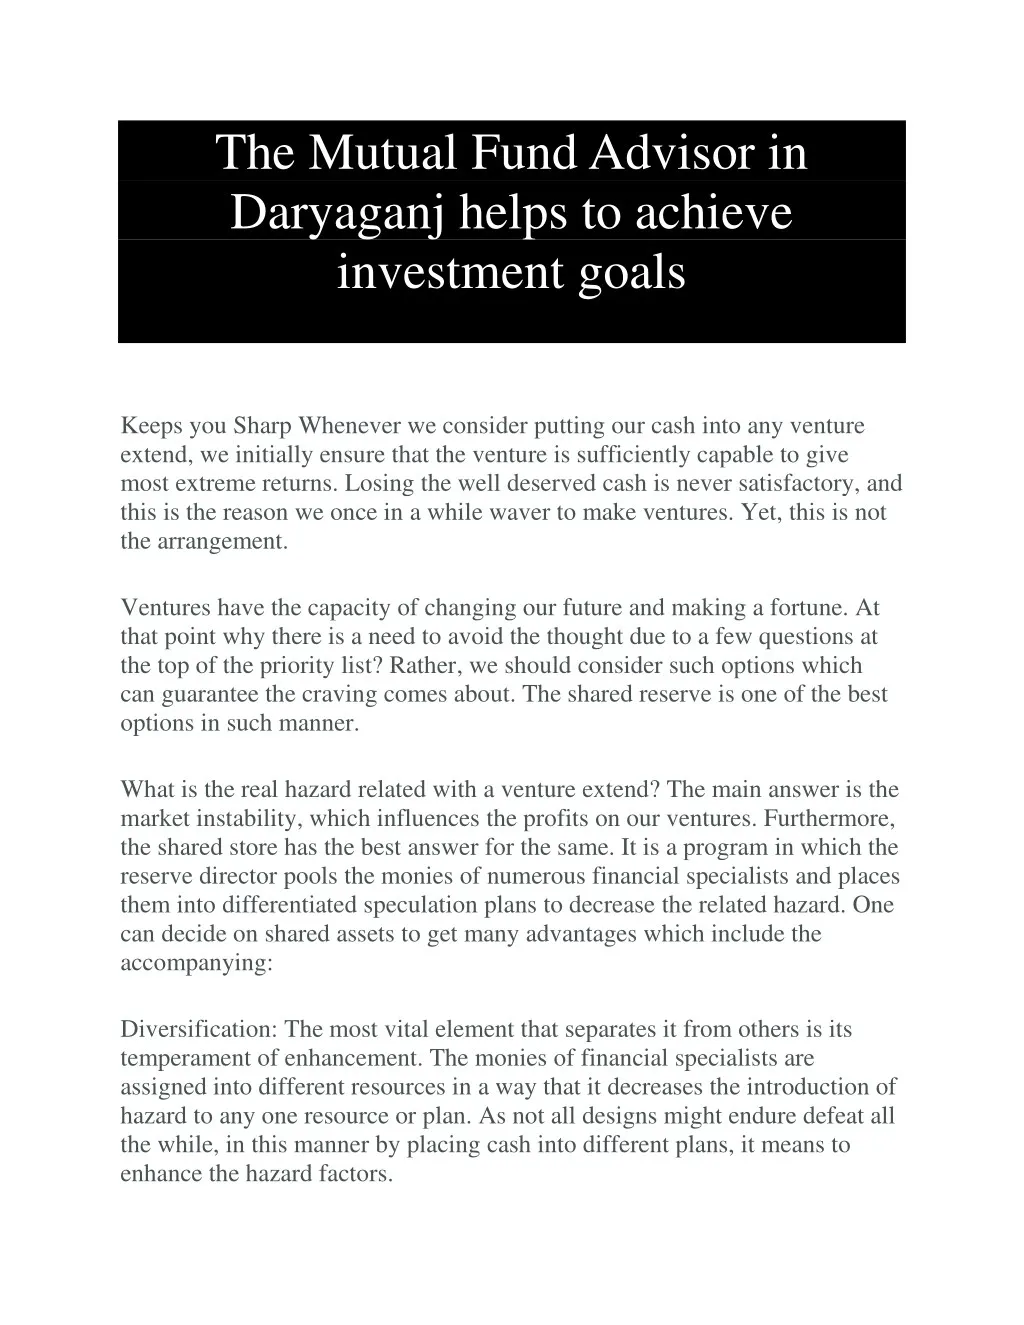 the mutual fund advisor in daryaganj helps